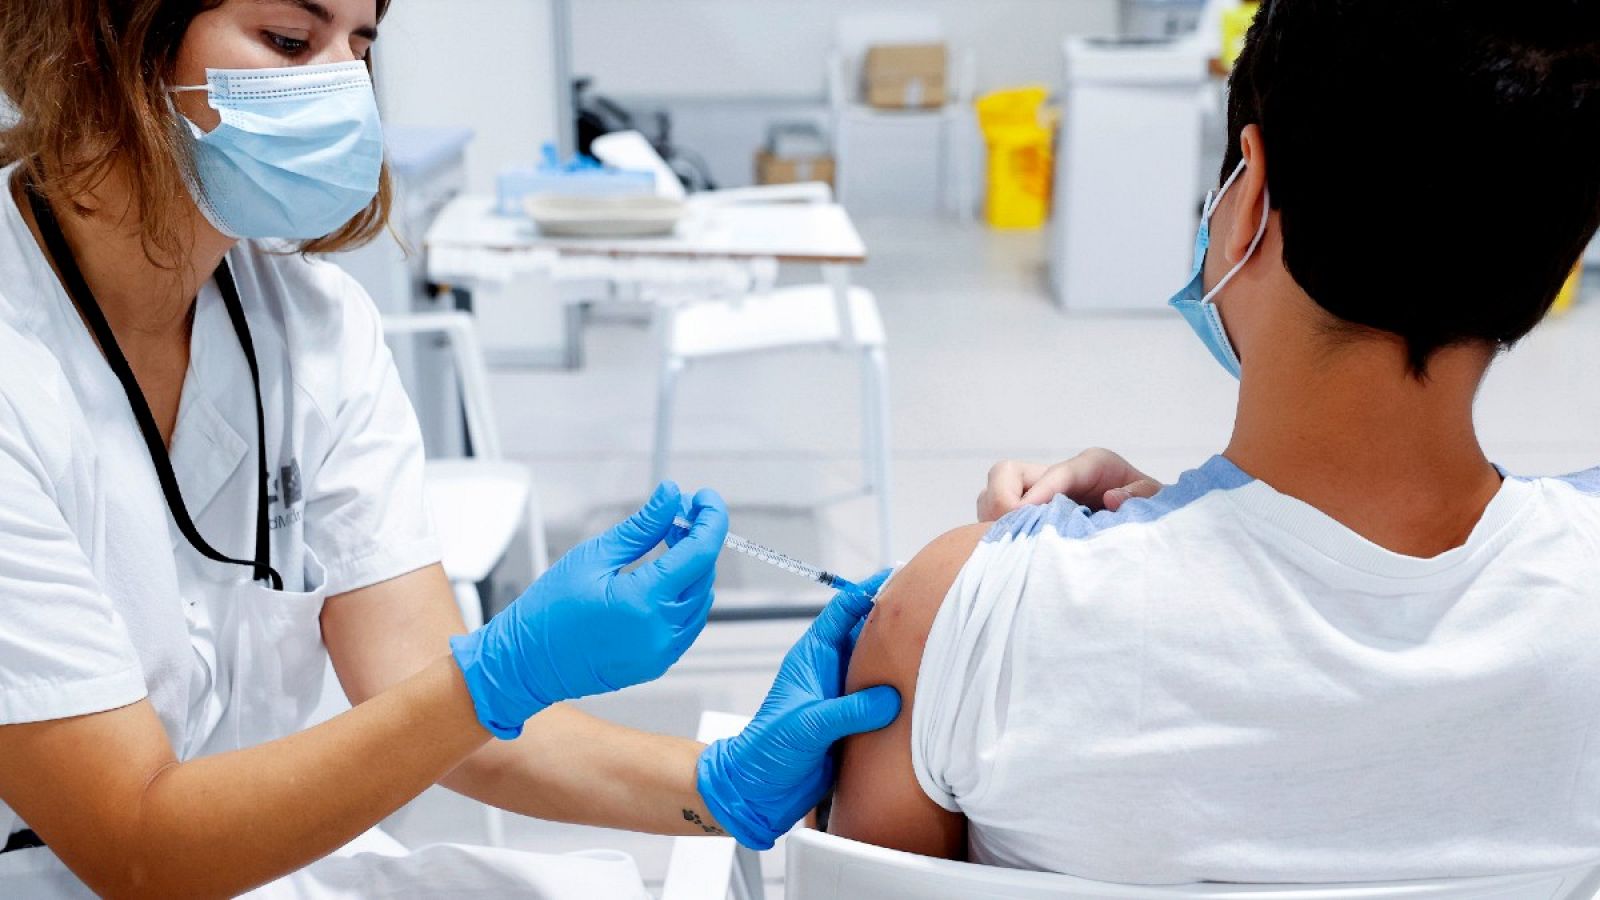 Un adolescente se vacuna contra el coronavirus en el hospital Enfermera Isabel Zendal de Madrid